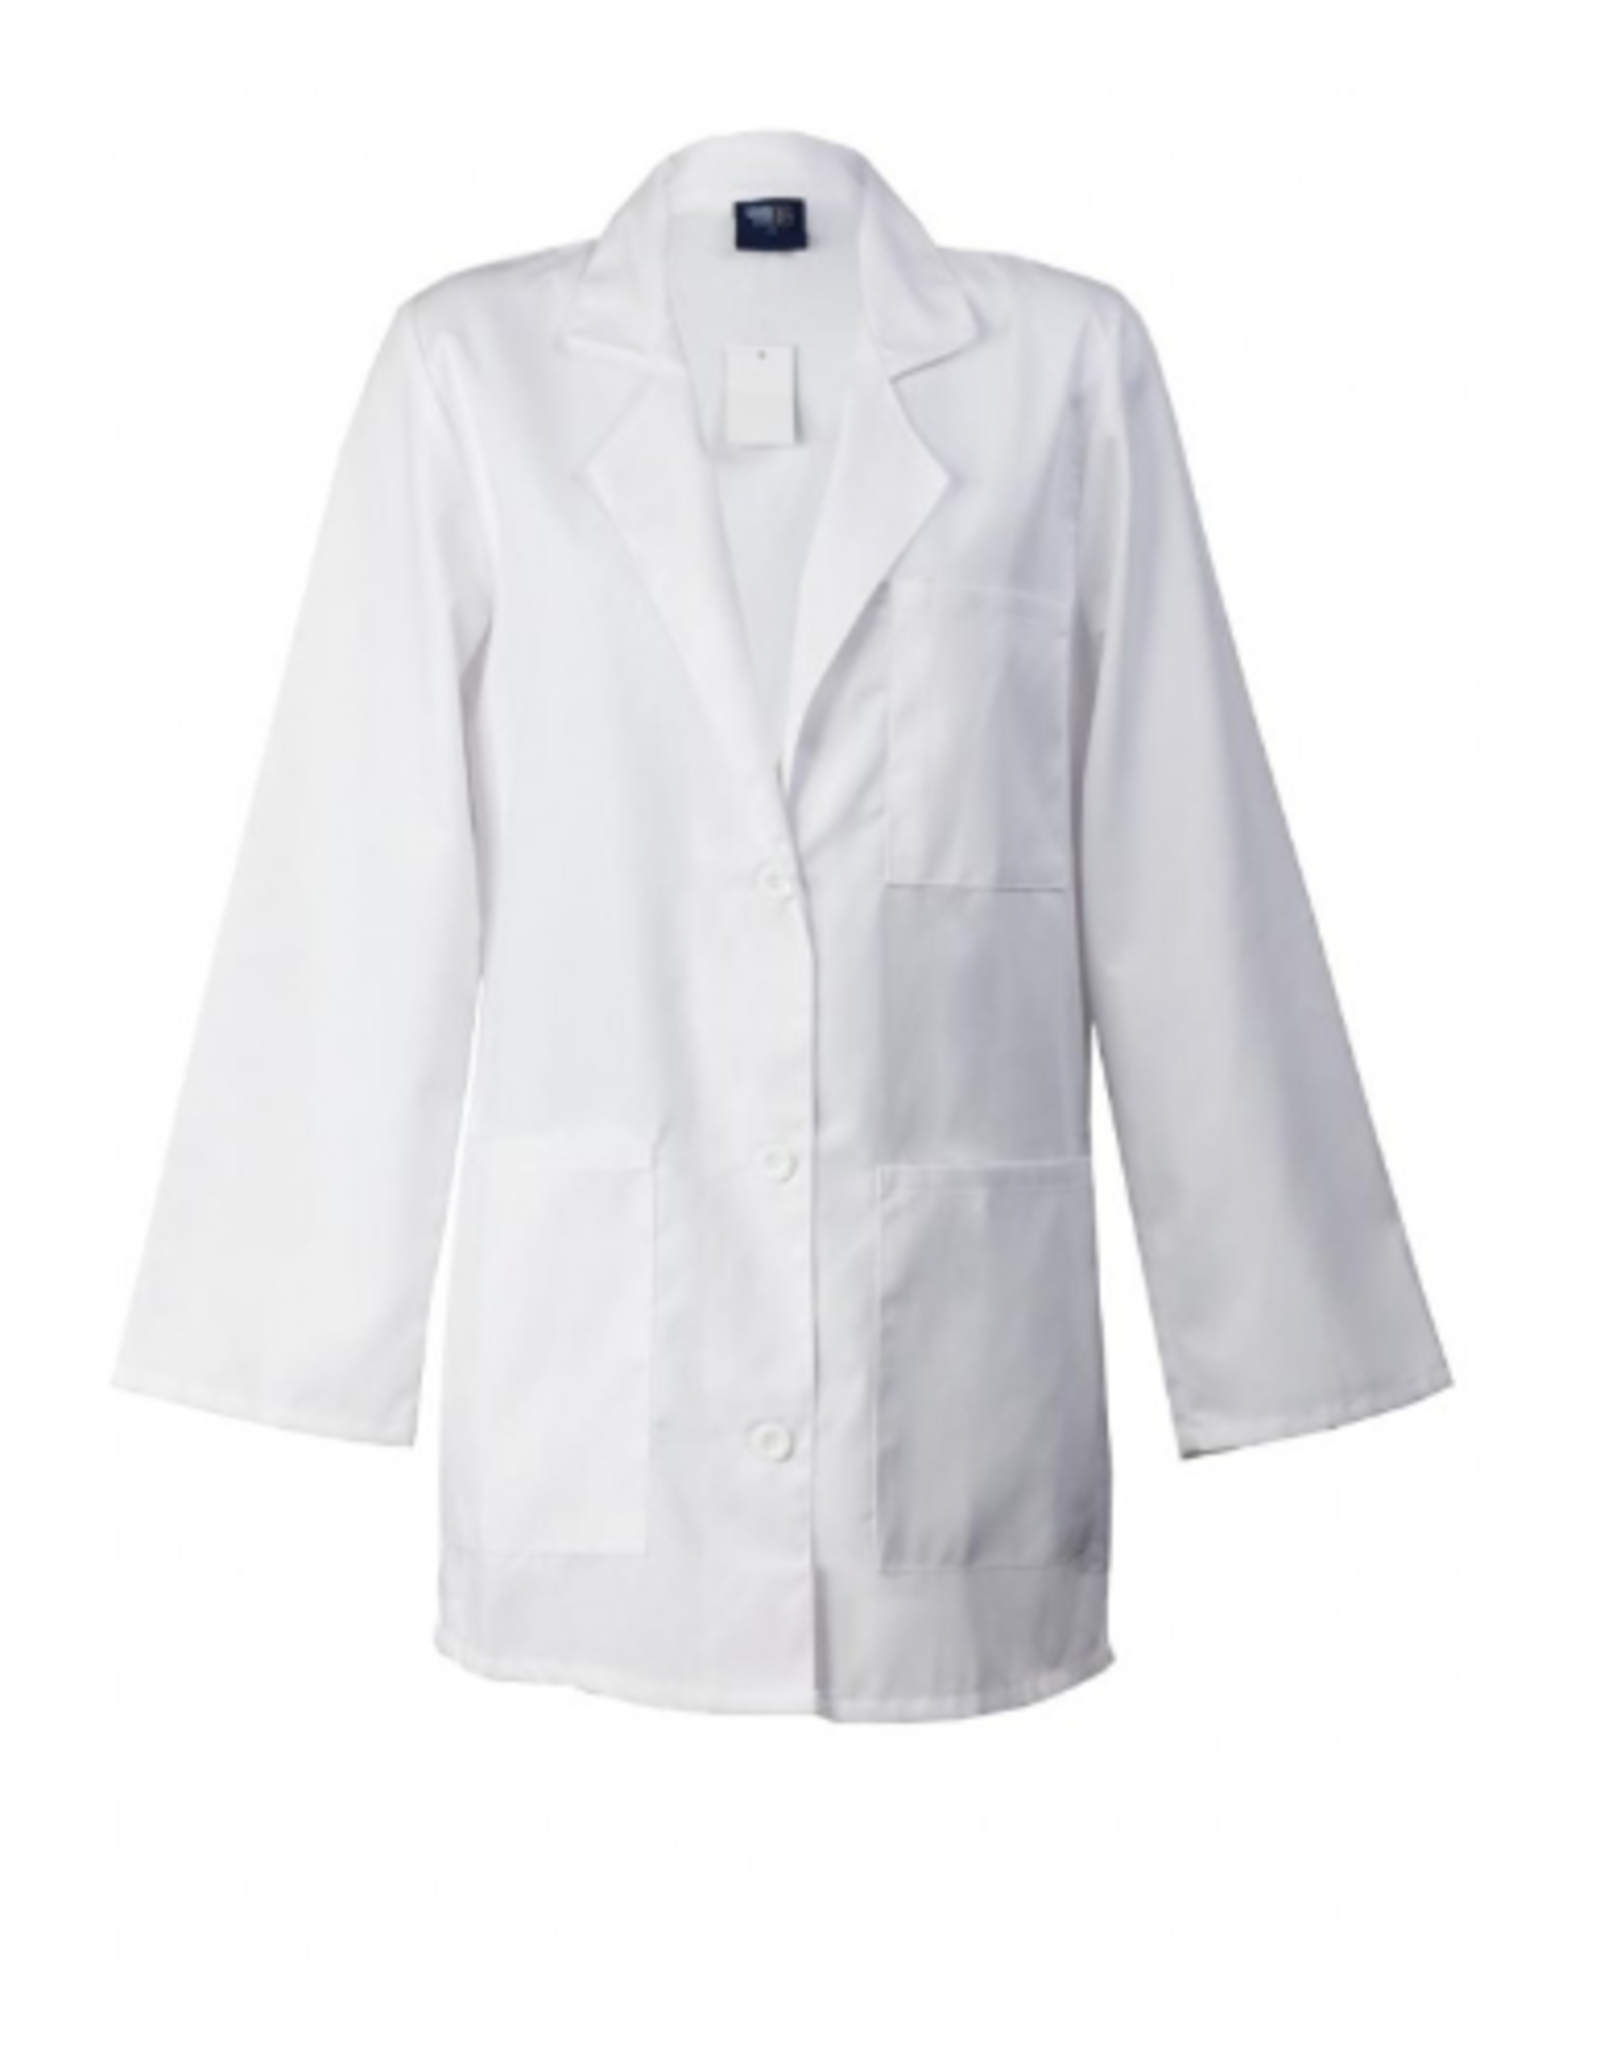 MedGear 301 MedGear LAT Women's 3 pocket Short Length Labcoat